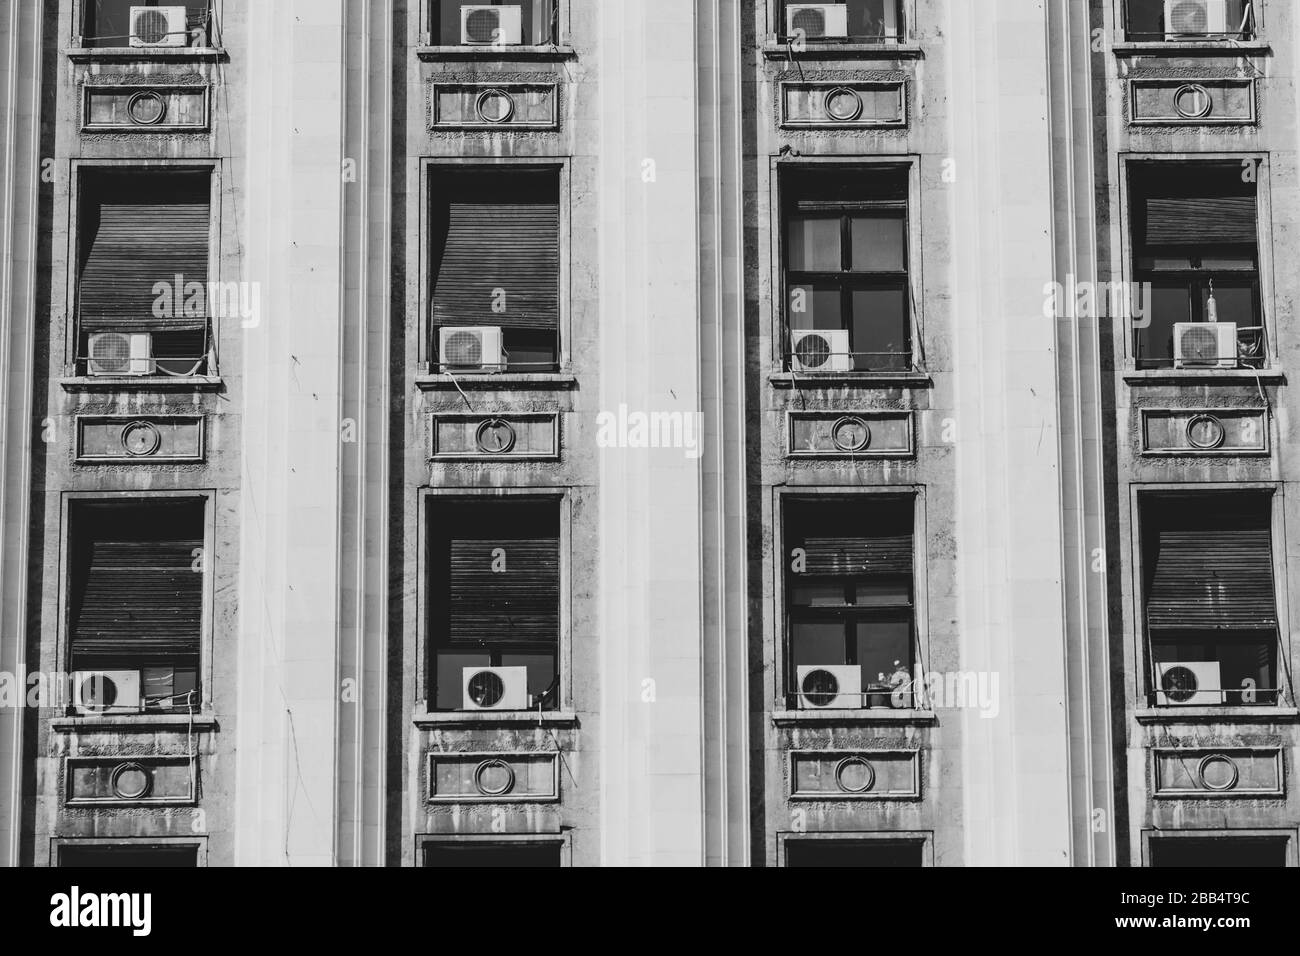 L'extérieur d'un ancien bâtiment de style soviétique avec des machines de climatisation à fenêtre. Banque D'Images